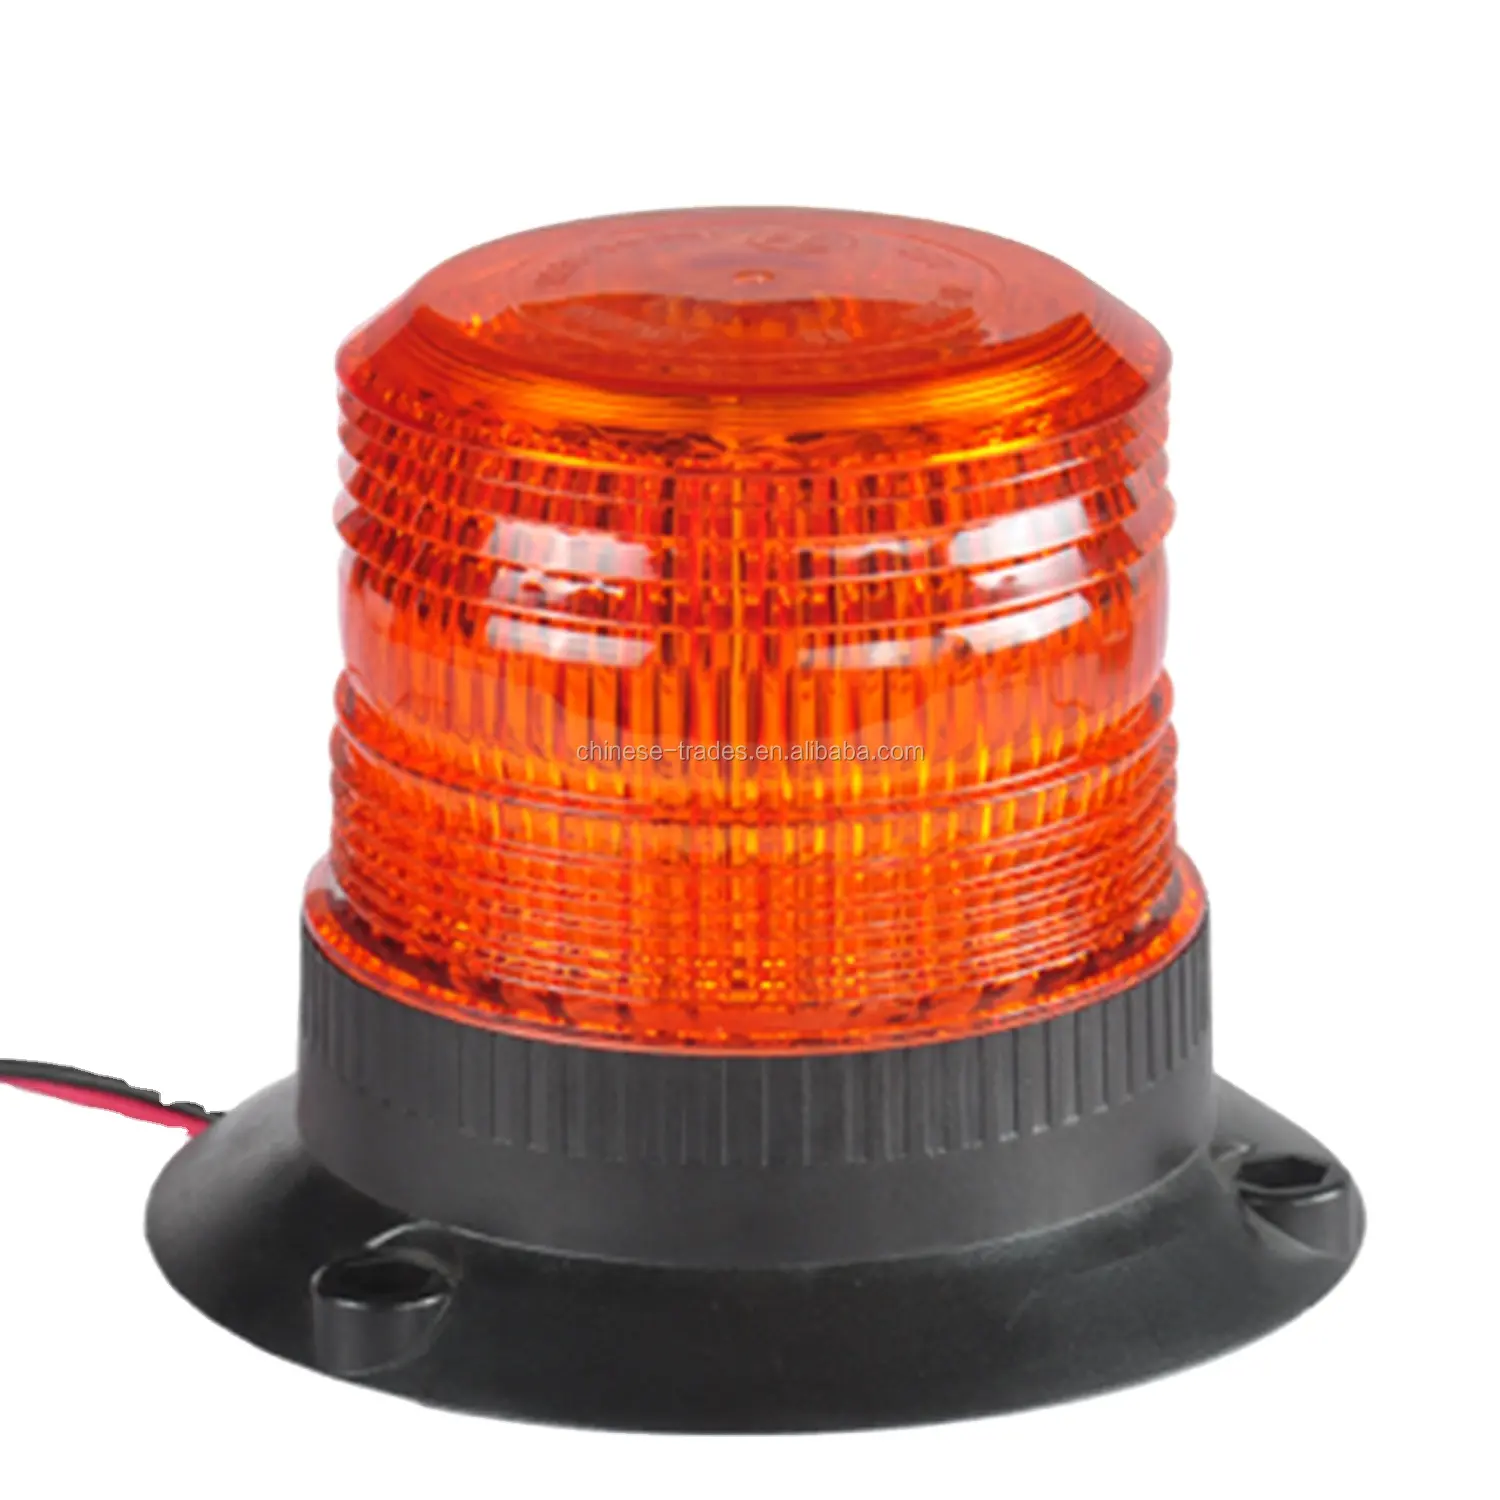 Độ sáng cao DC12V 24V LED giao thông ánh sáng xoay nhấp nháy khẩn cấp chỉ số đèn hiệu xe an toàn ROTARY đèn IP65